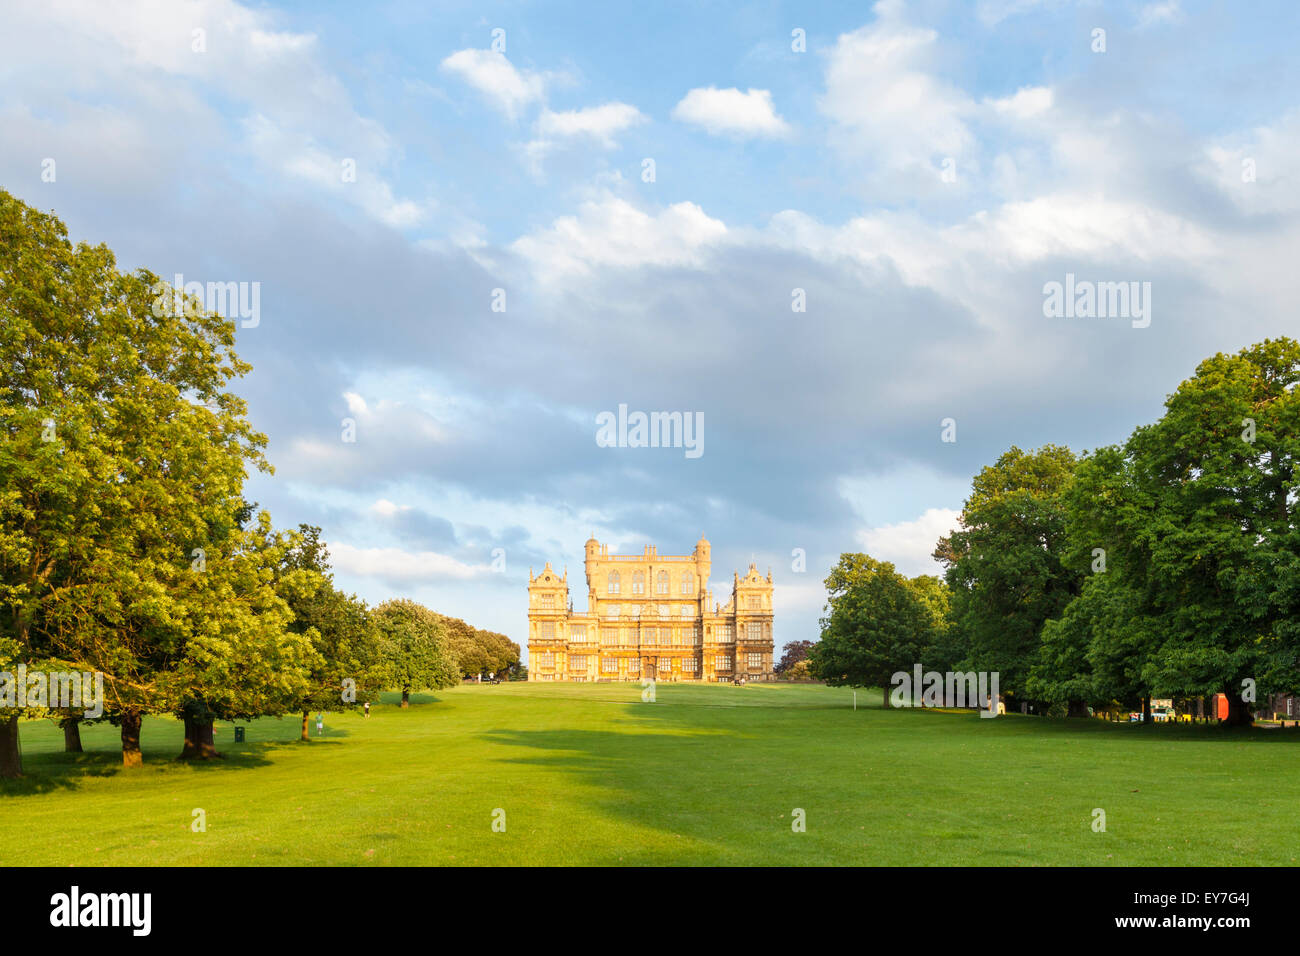 Wollaton Park mit wollaton Hall, auf einem Hügel in der Ferne. Wollaton Park, Nottingham, England, Großbritannien Stockfoto